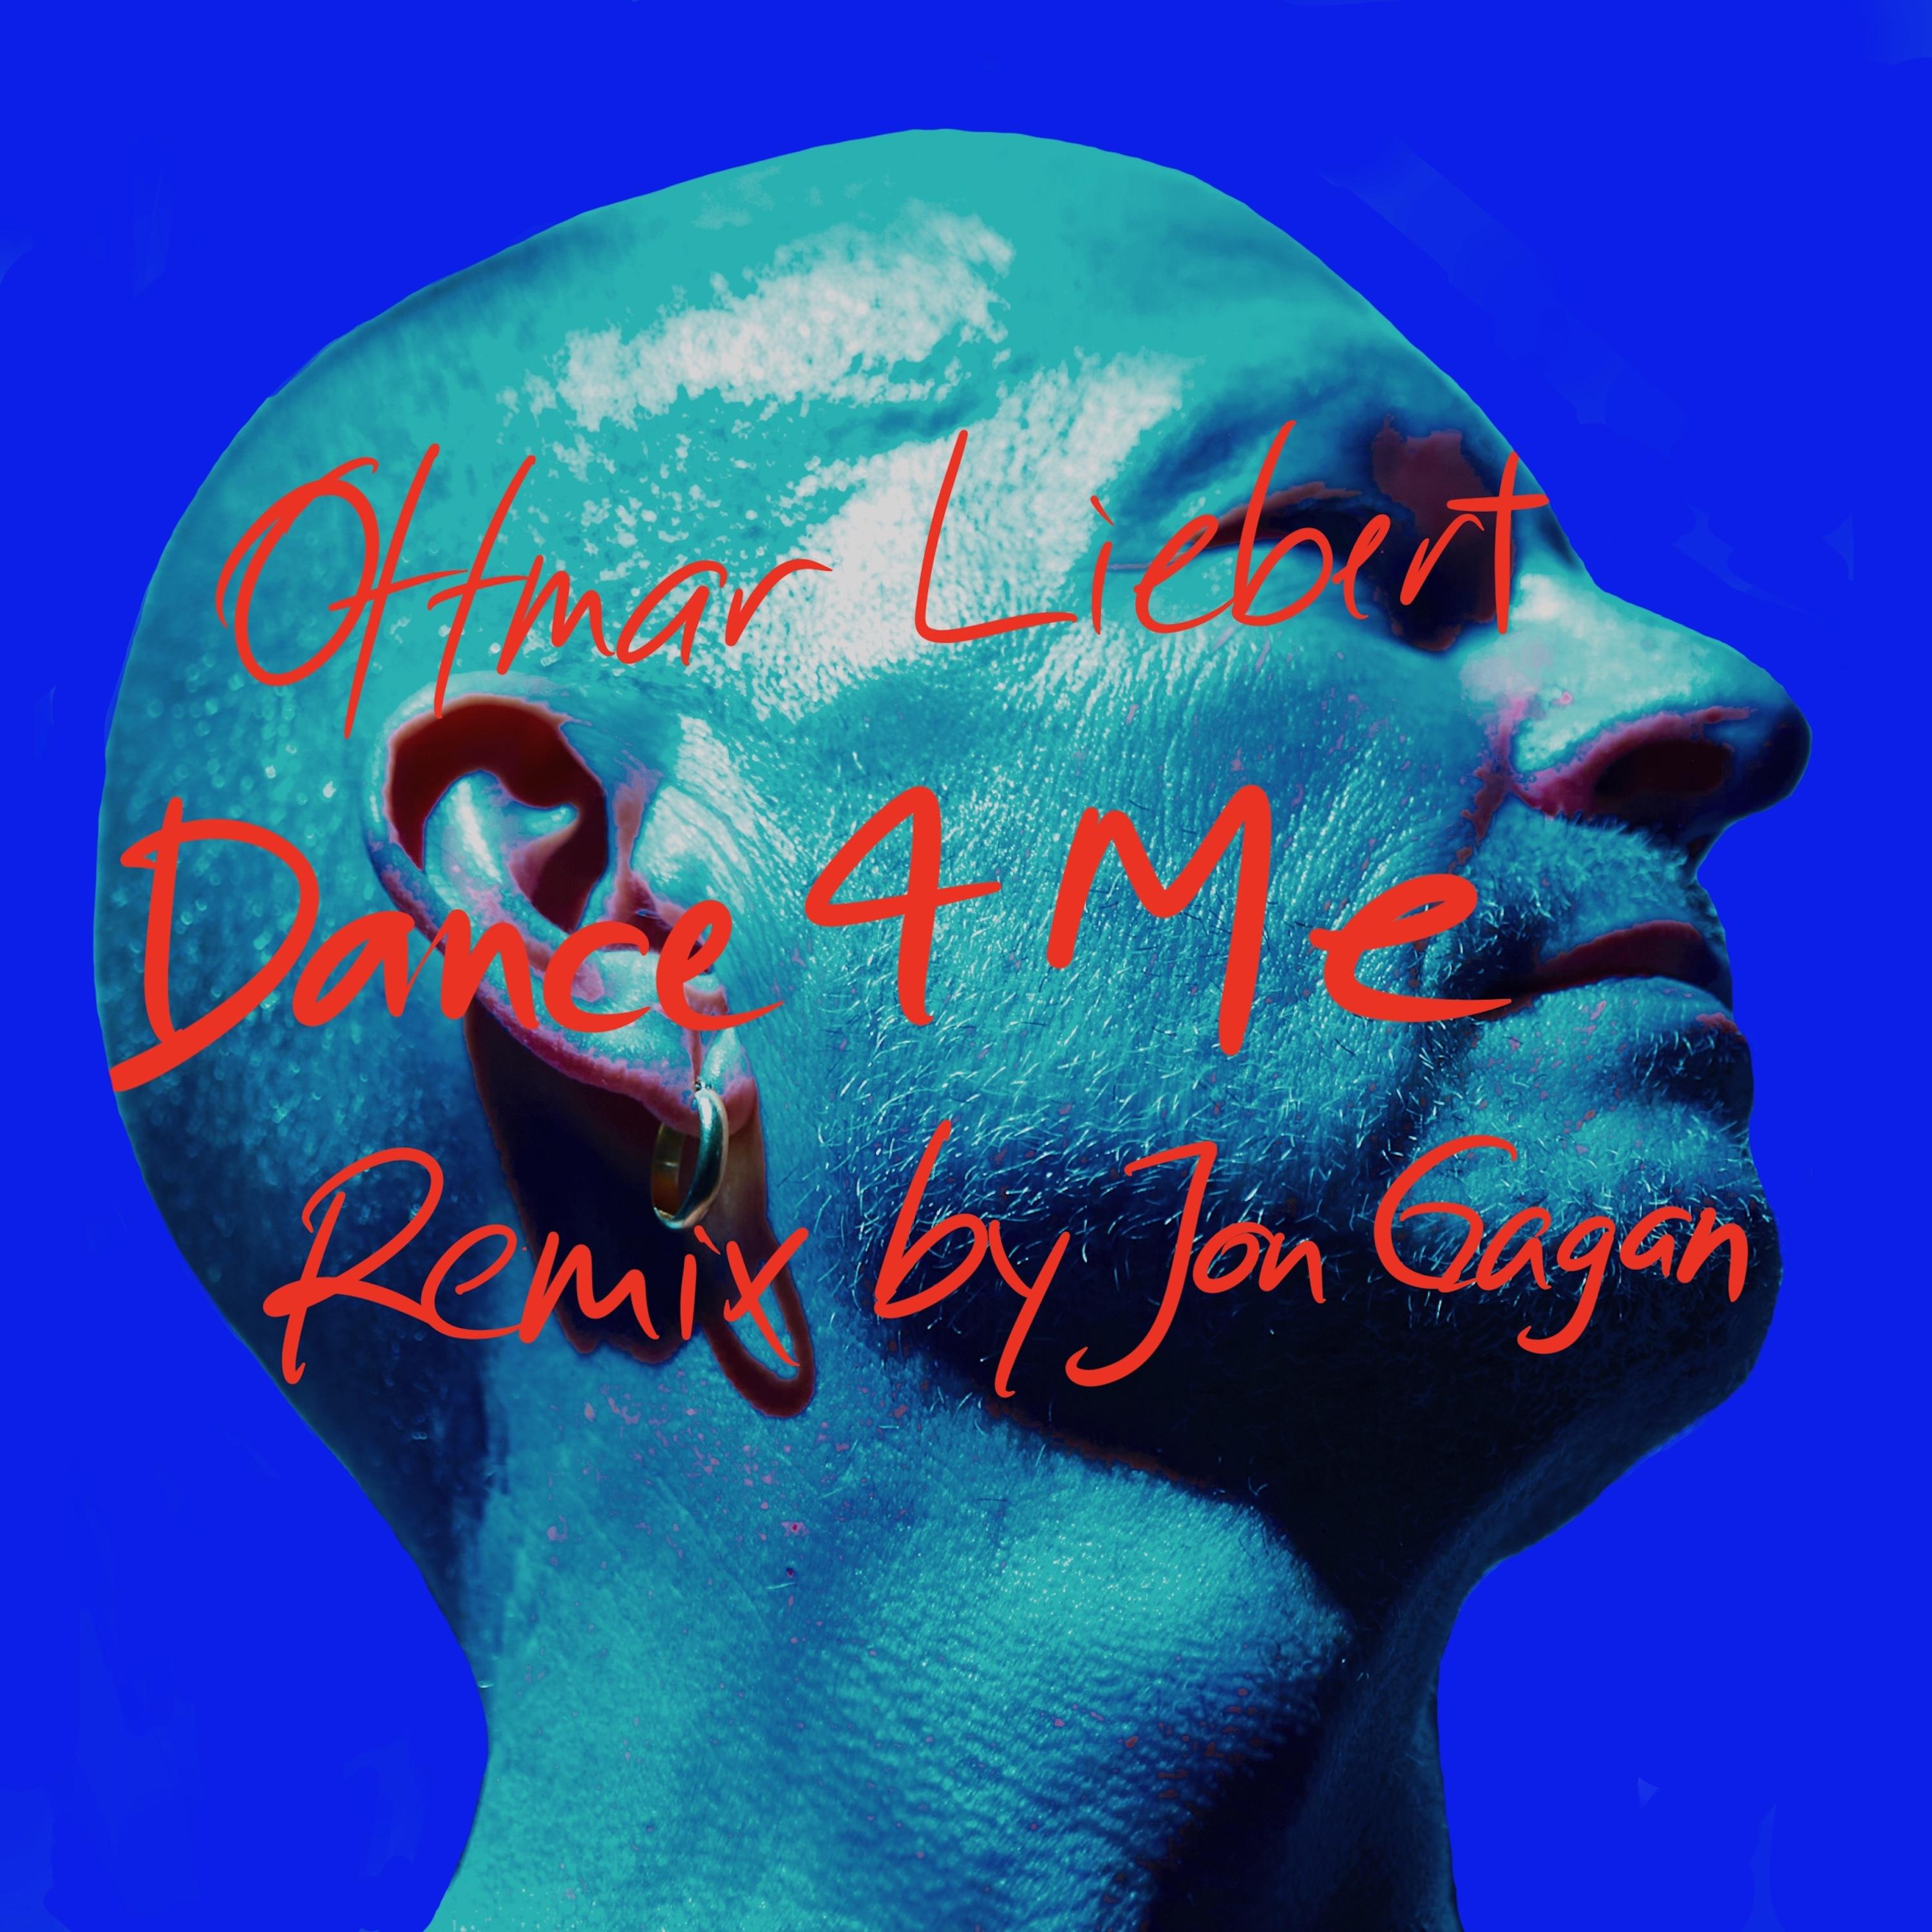 Ottmar Liebert - Dance 4 Me (Jon Gagan Remix)